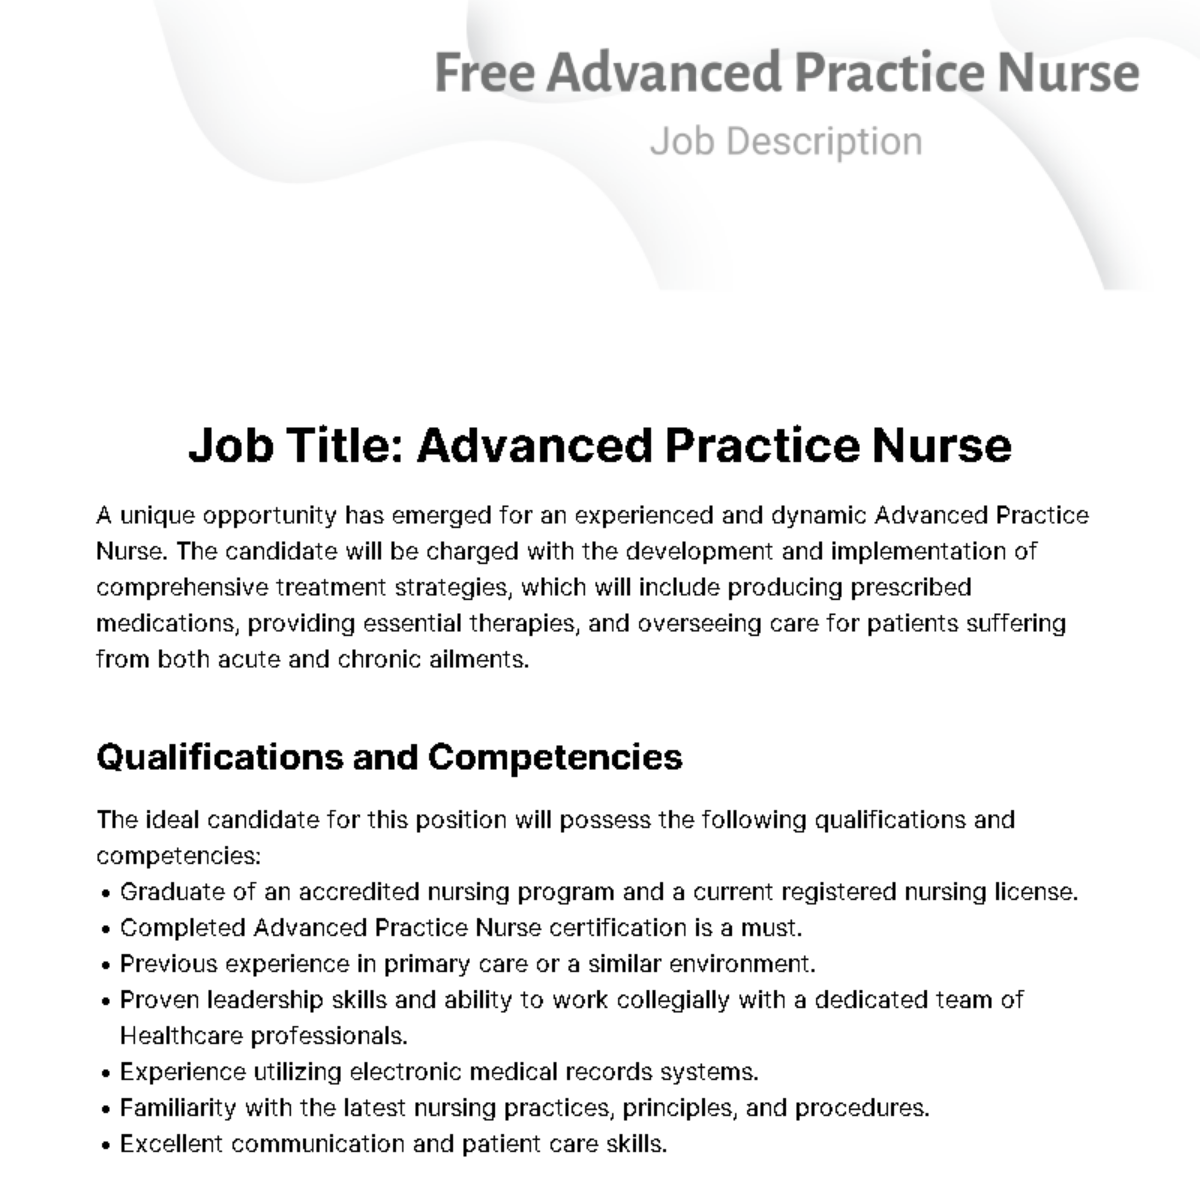 Free Advanced Practice Nurse Job Description Template